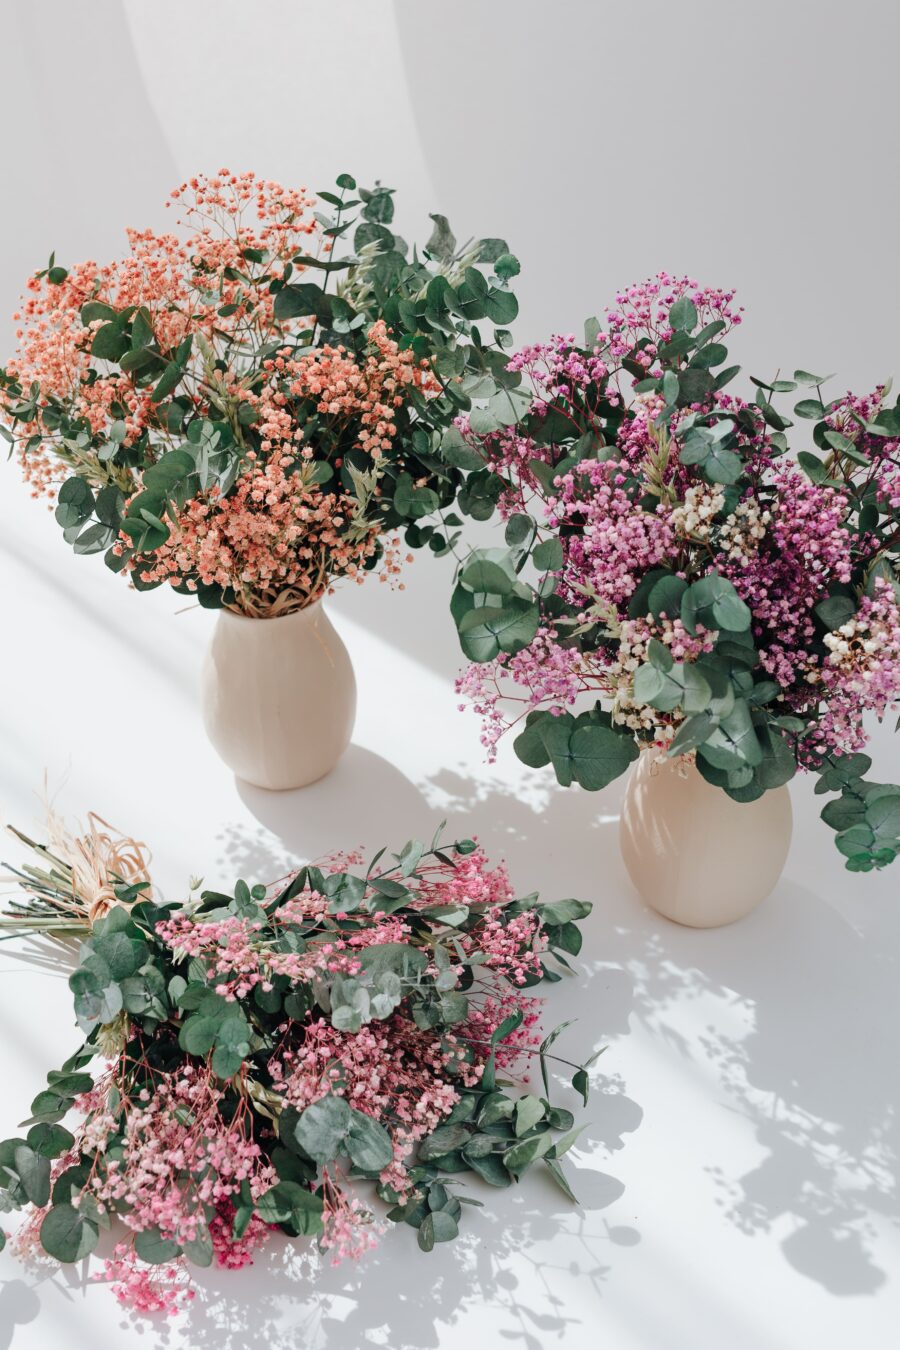 Haz tu pedido de flores preservadas hoy mismo y disfruta de la conveniencia de recibir tus arreglos florales directamente en tu hogar. ¡Añade un toque de frescura y belleza a cualquier espacio con nuestras flores preservadas!